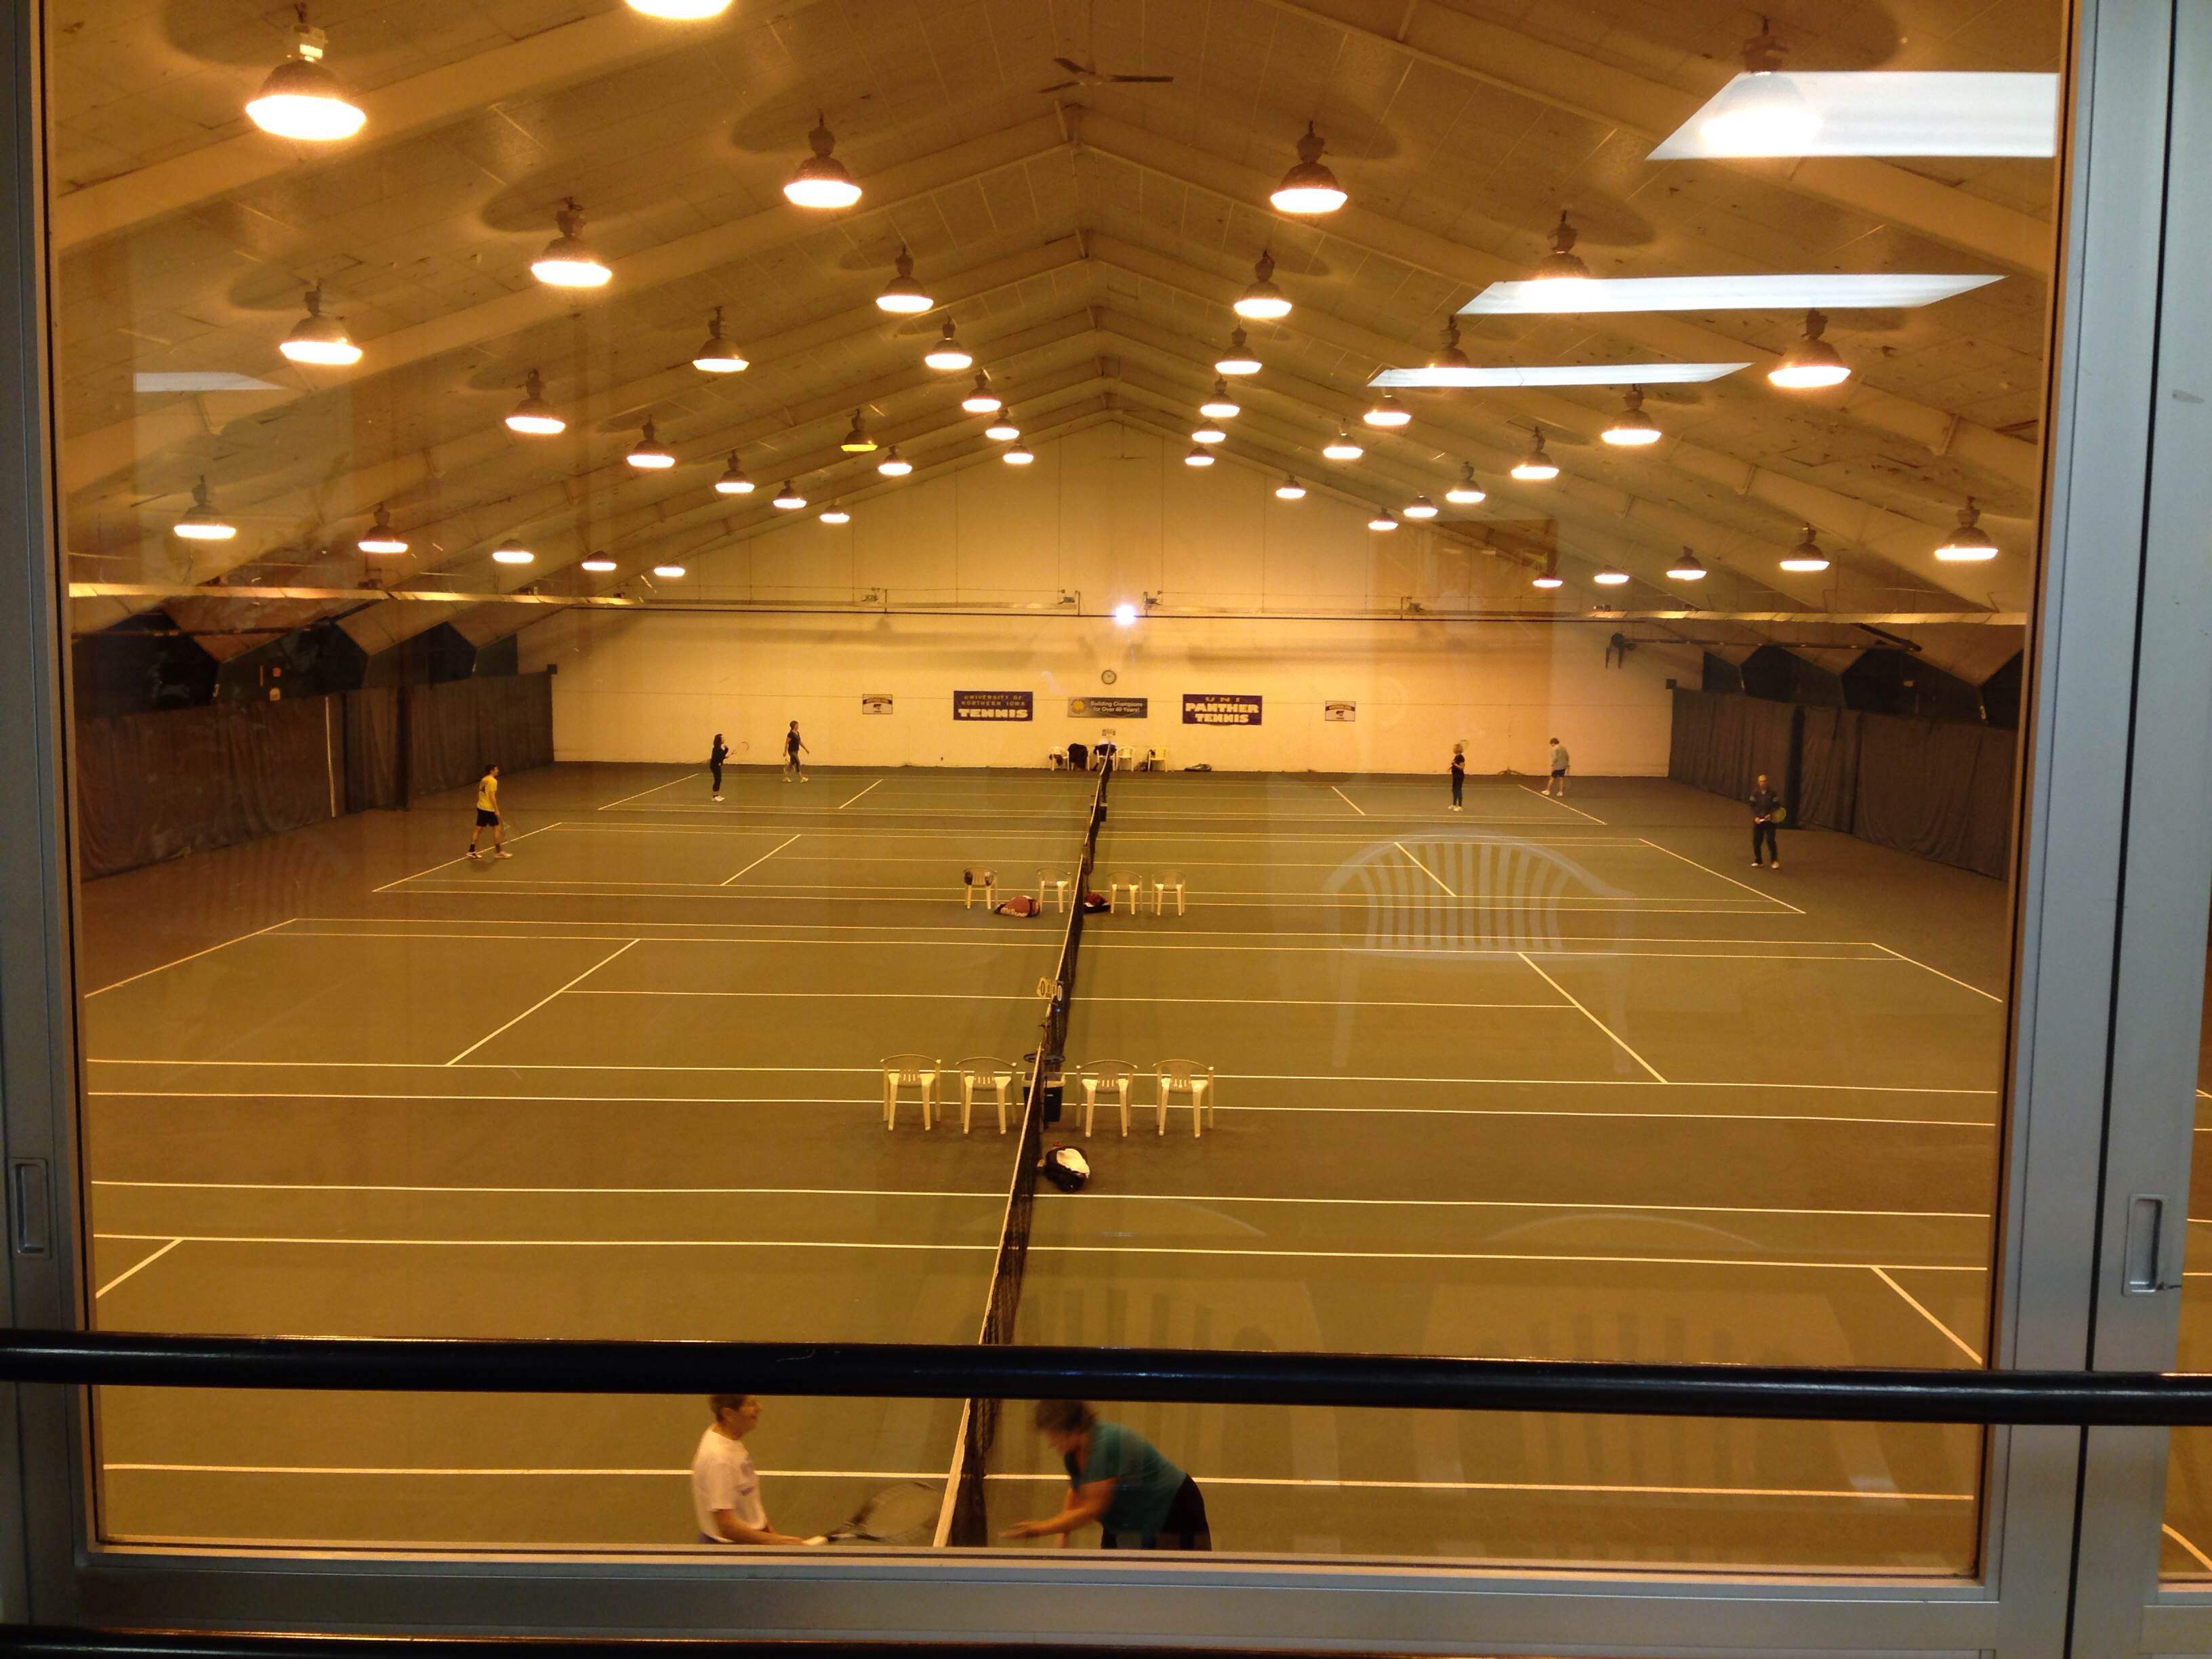  Indoor Tennis Courts with metal halide fixtures